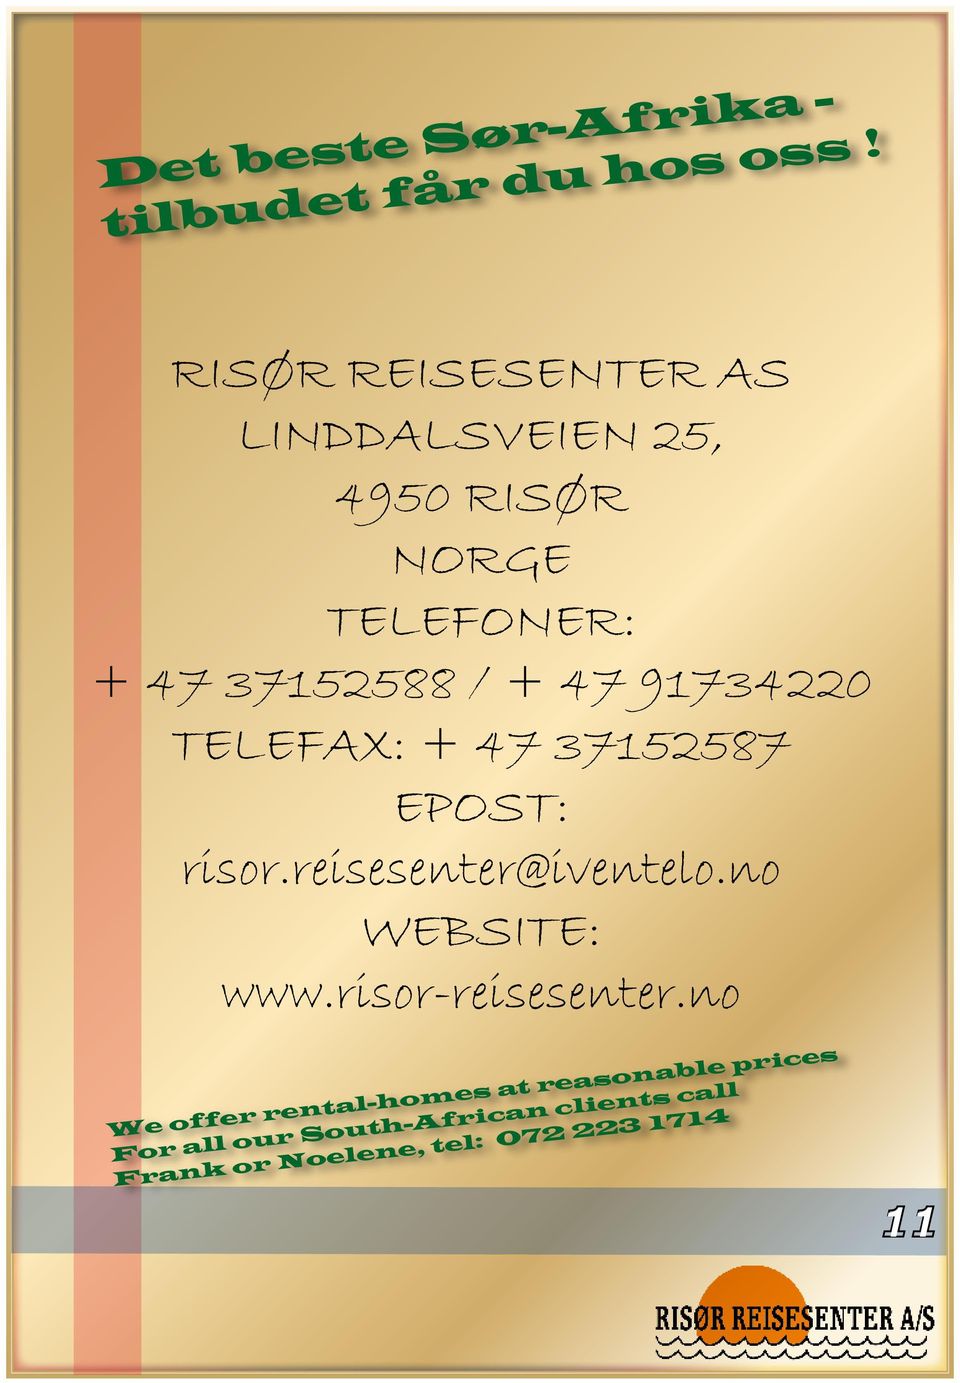 91734220 TELEFAX: + 47 37152587 EPOST: risor.reisesenter@iventelo.no WEBSITE: www.